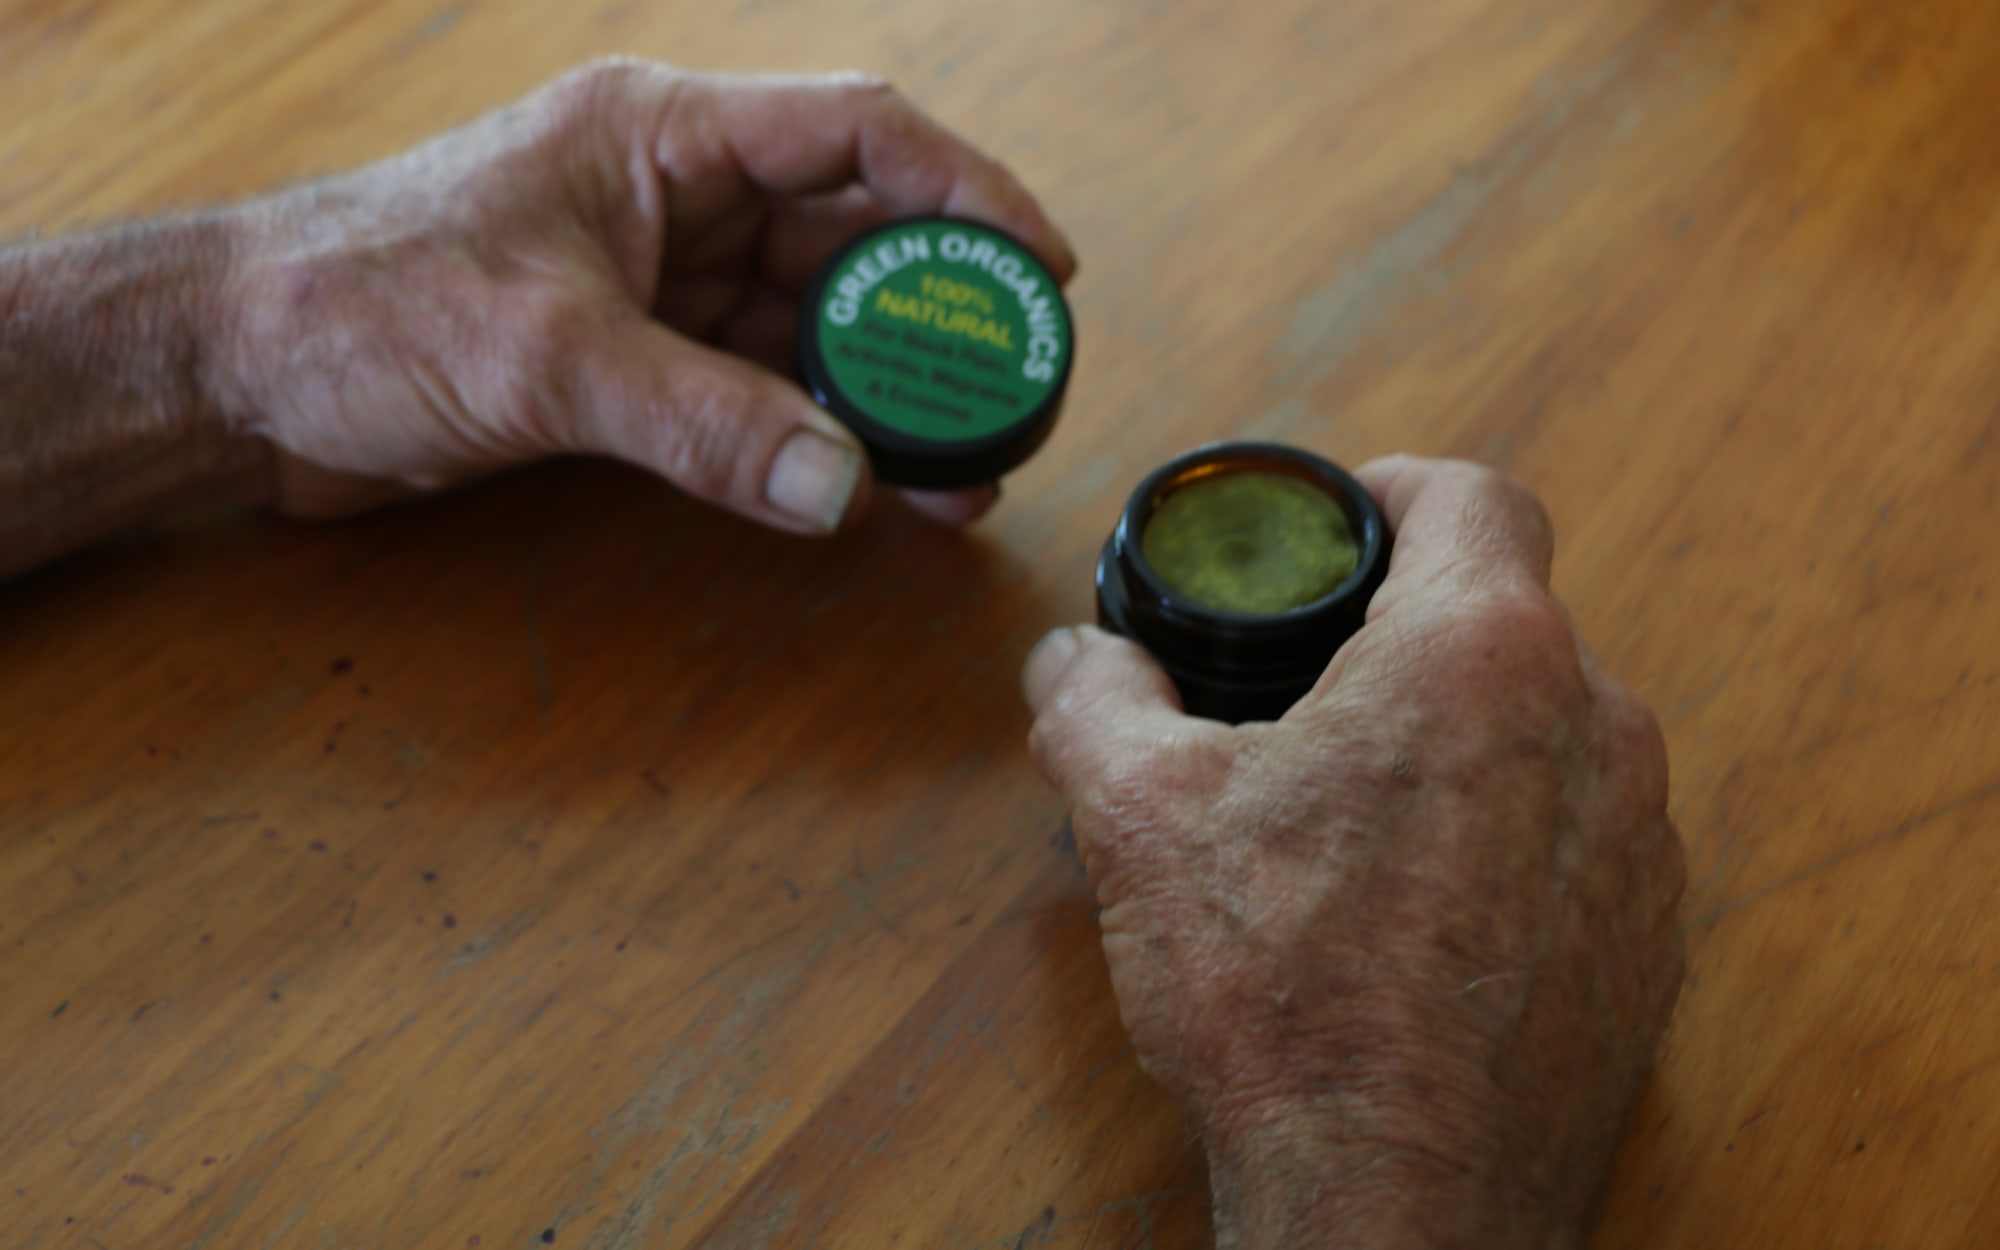 Paul makes a cannabis-infused balm, as well as a high-cannabidiol oil